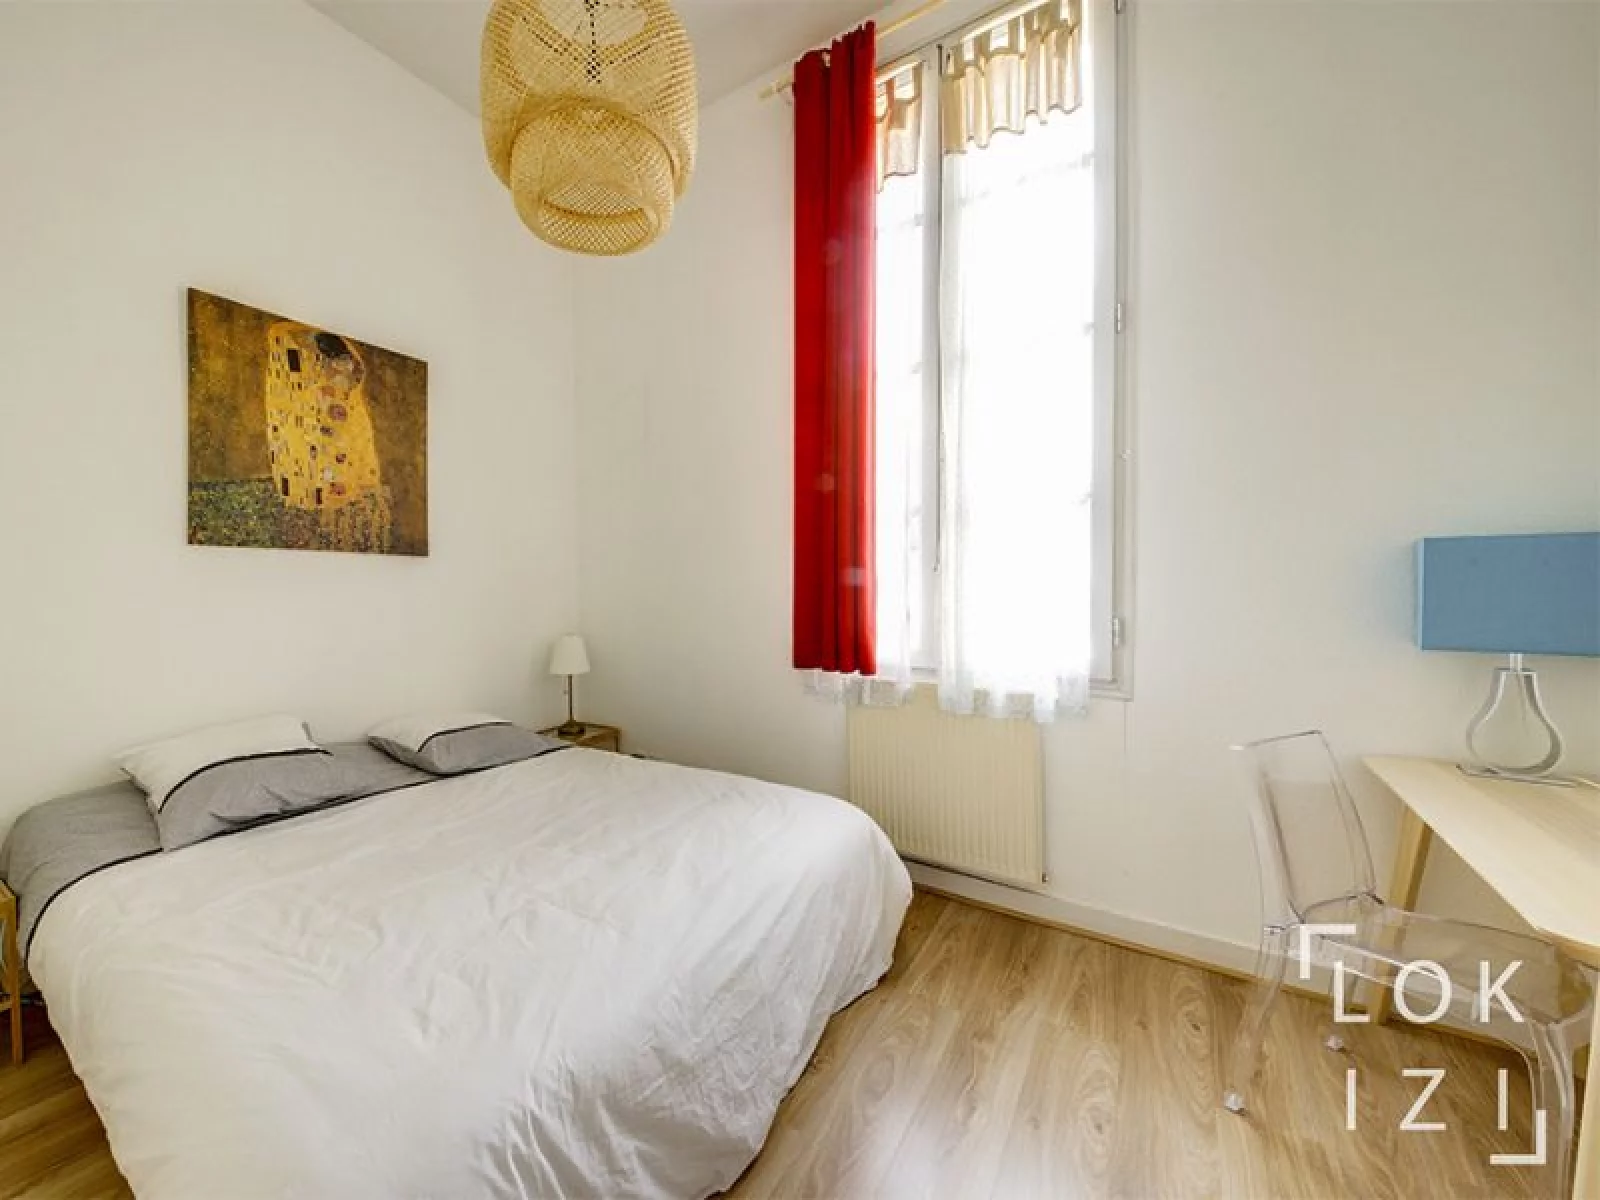 Location appartement meublé 2 pièces 45m²  (Bordeaux centre)